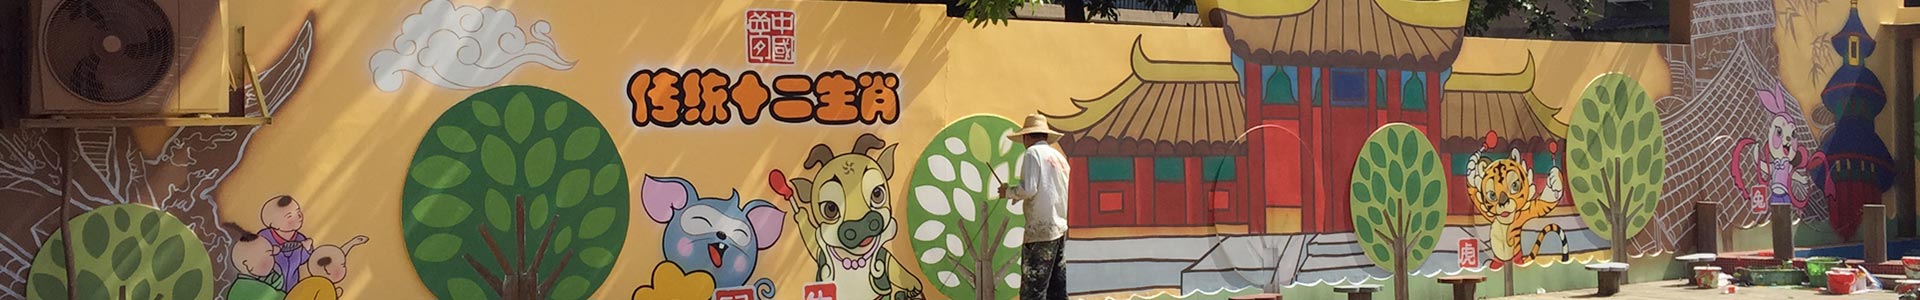 福州阳光壁画